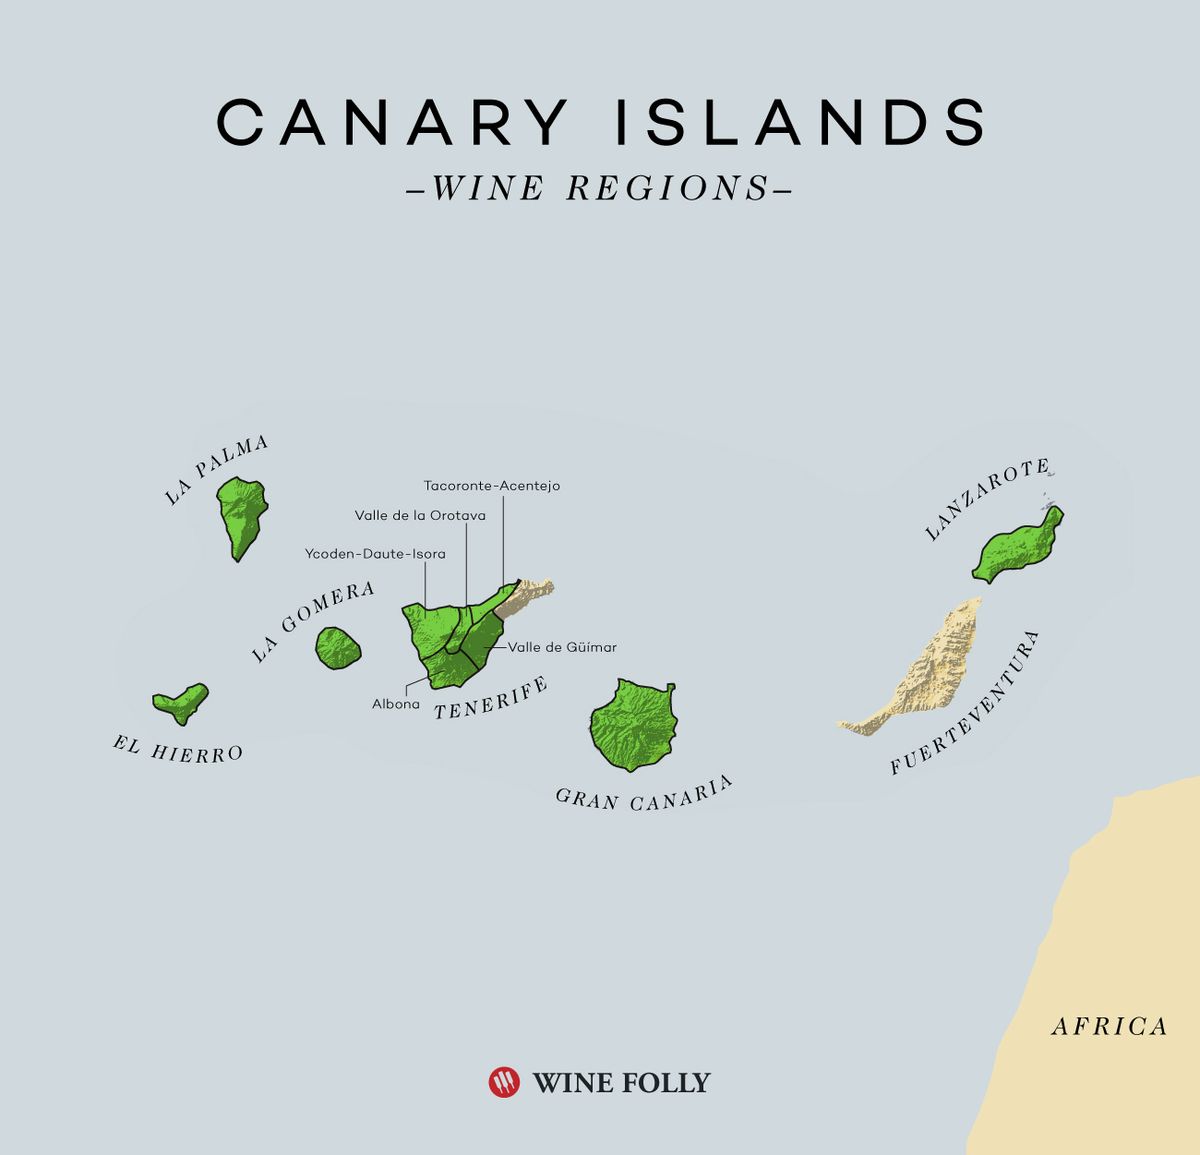 Kanarieöarna Vinkarta av Wine Folly